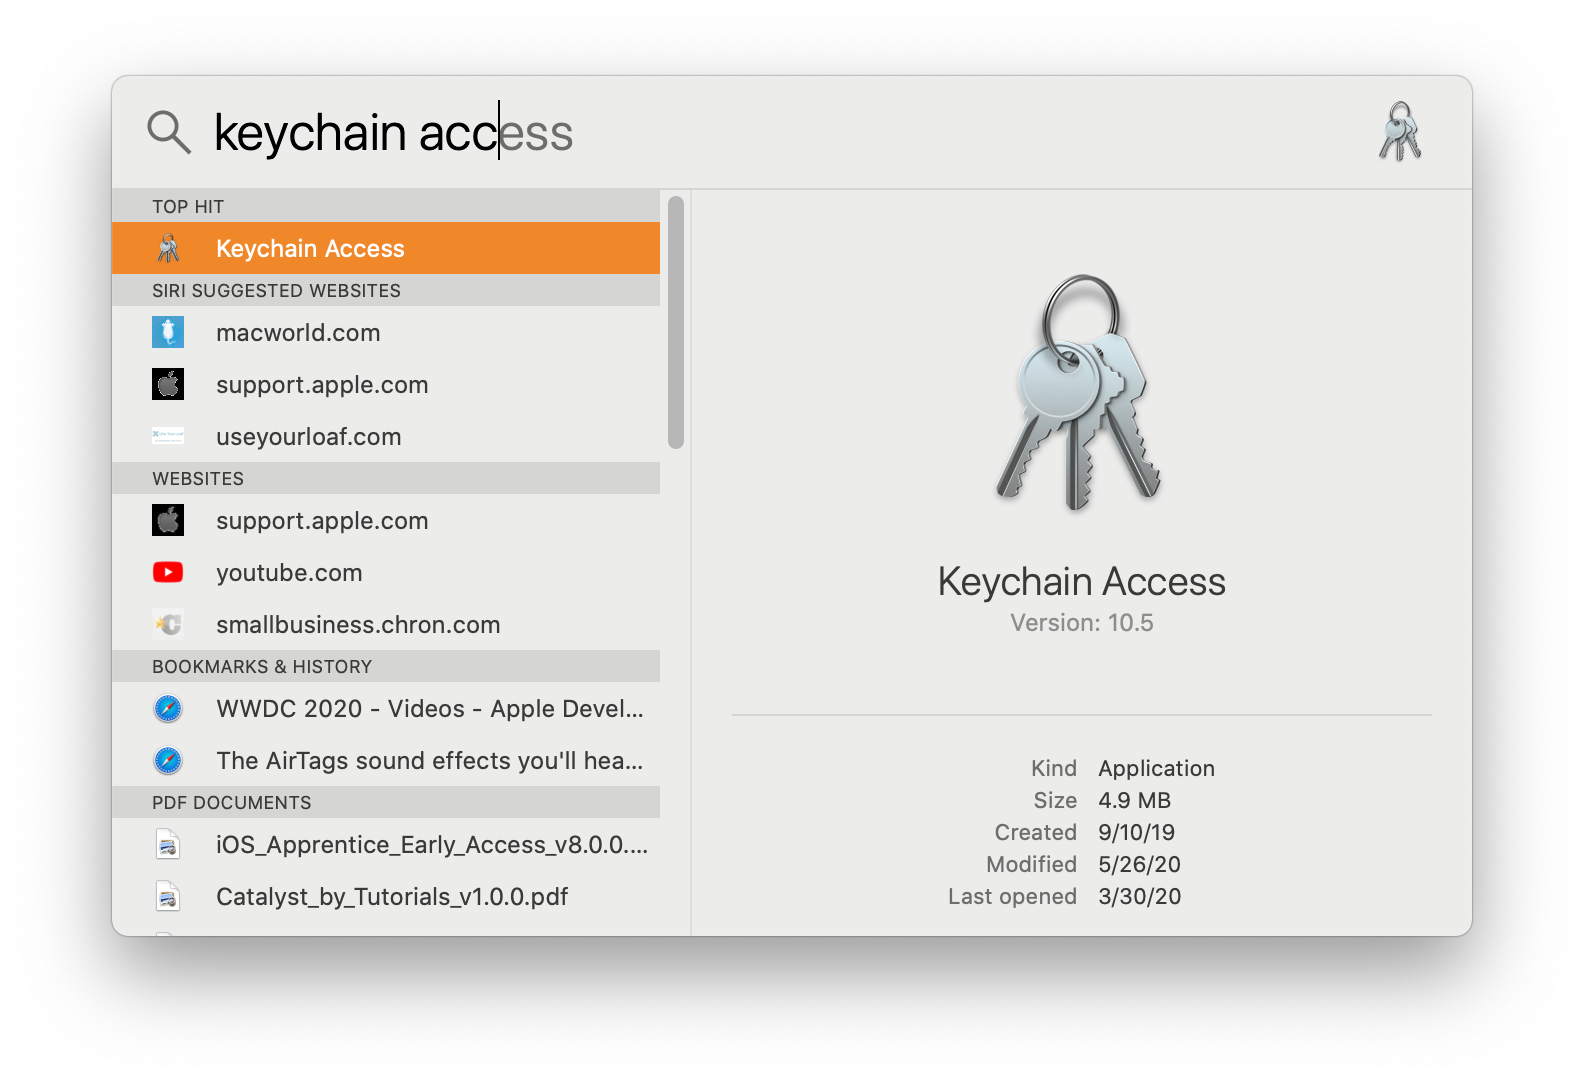 Tela da barra de pesquisa do Mac com a busca keychain access